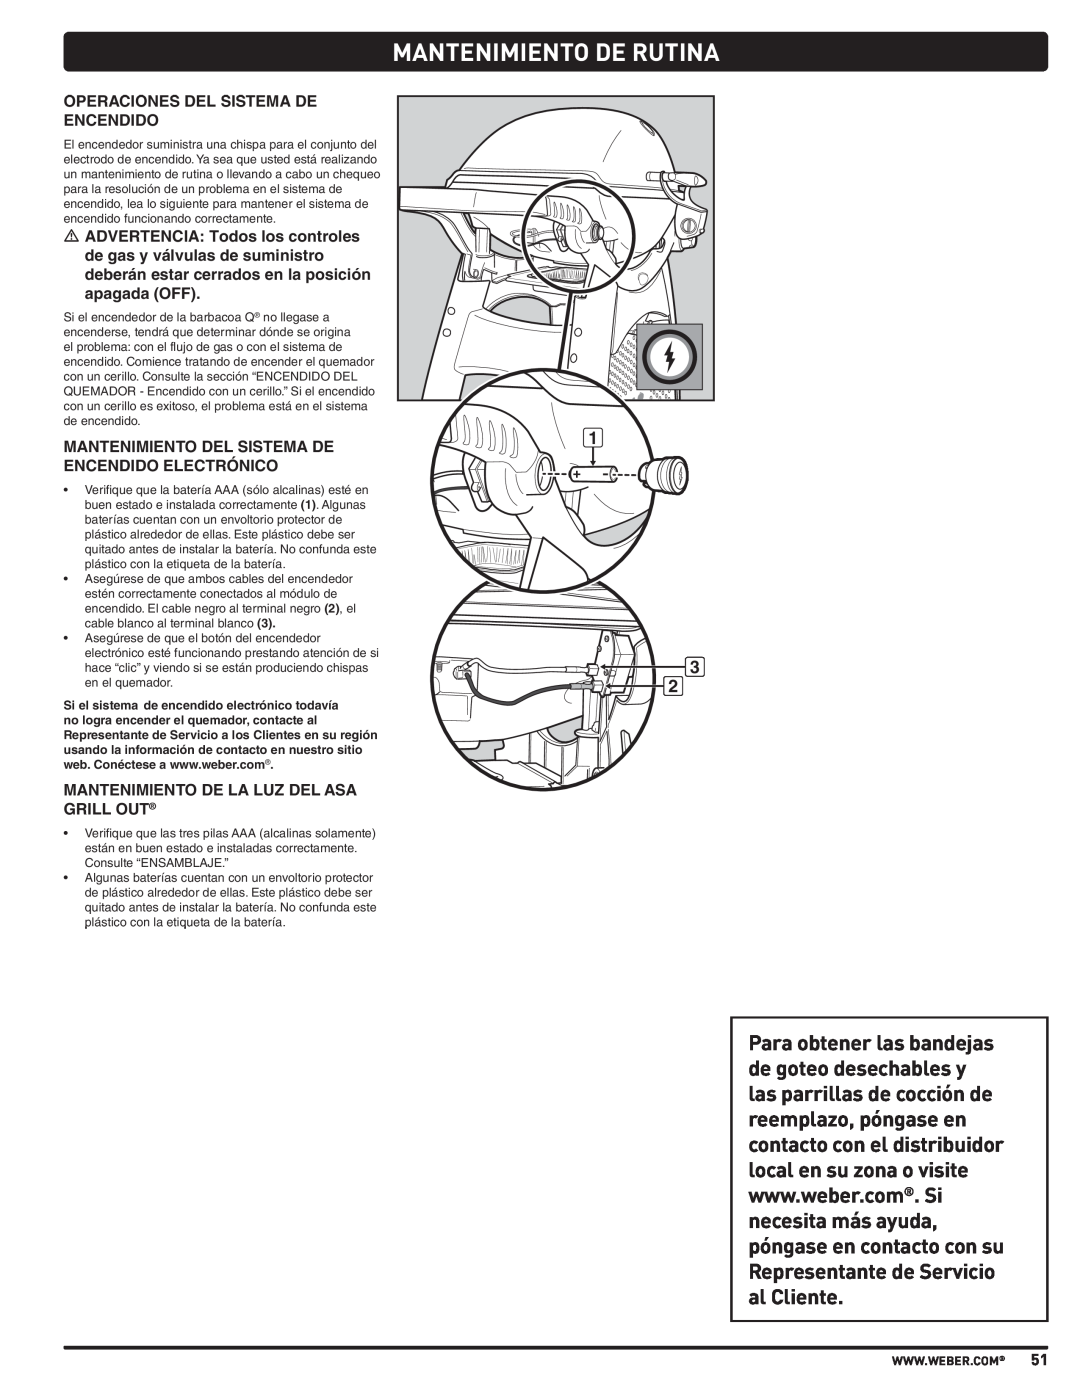 Weber 57515 manual Mantenimiento De Rutina, Operaciones Del Sistema De Encendido, Mantenimiento Del Sistema De 